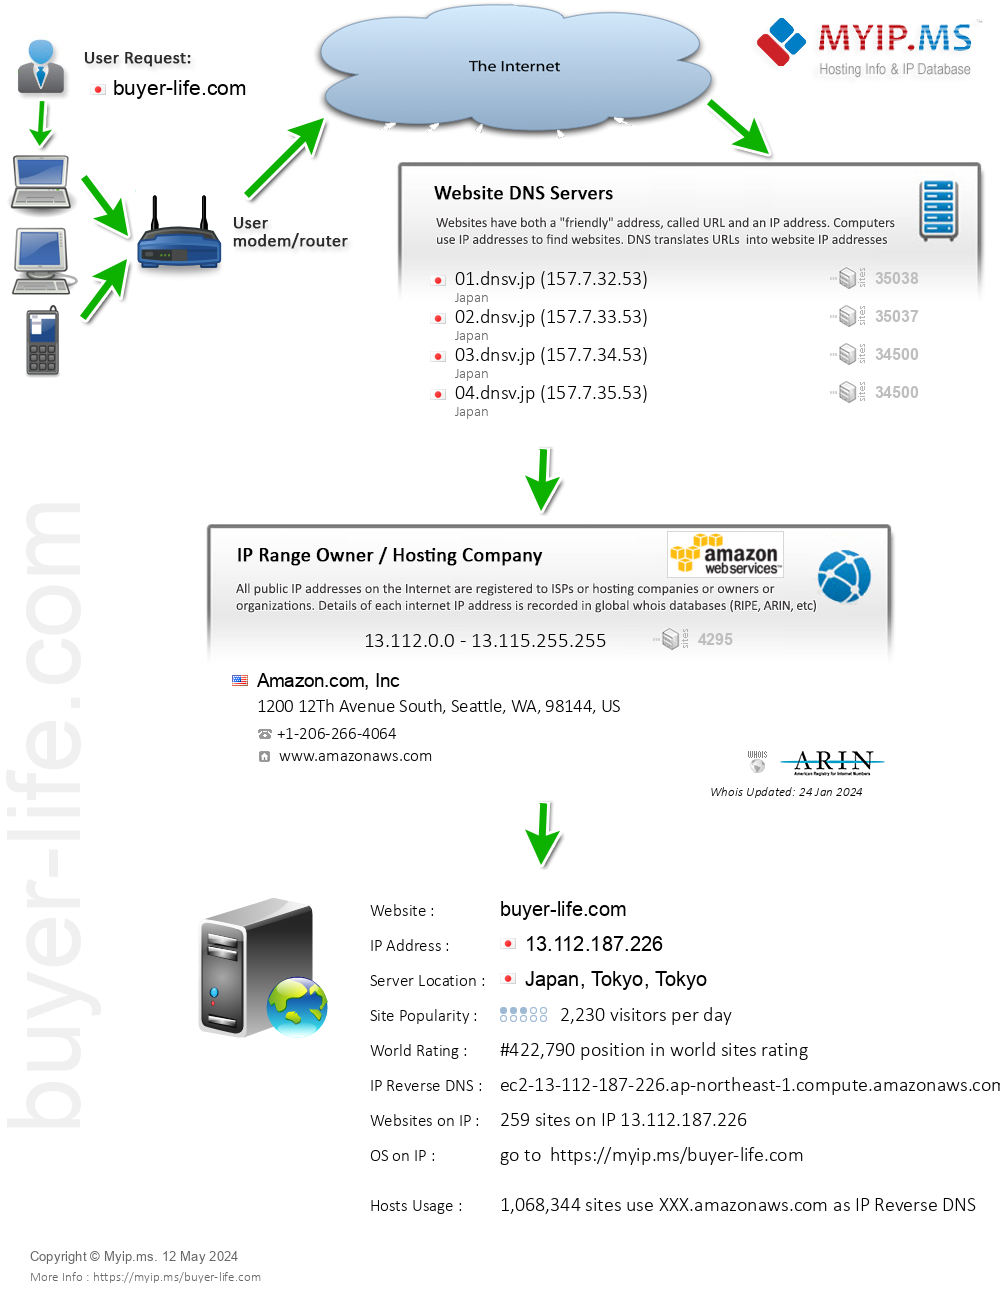 Buyer-life.com - Website Hosting Visual IP Diagram